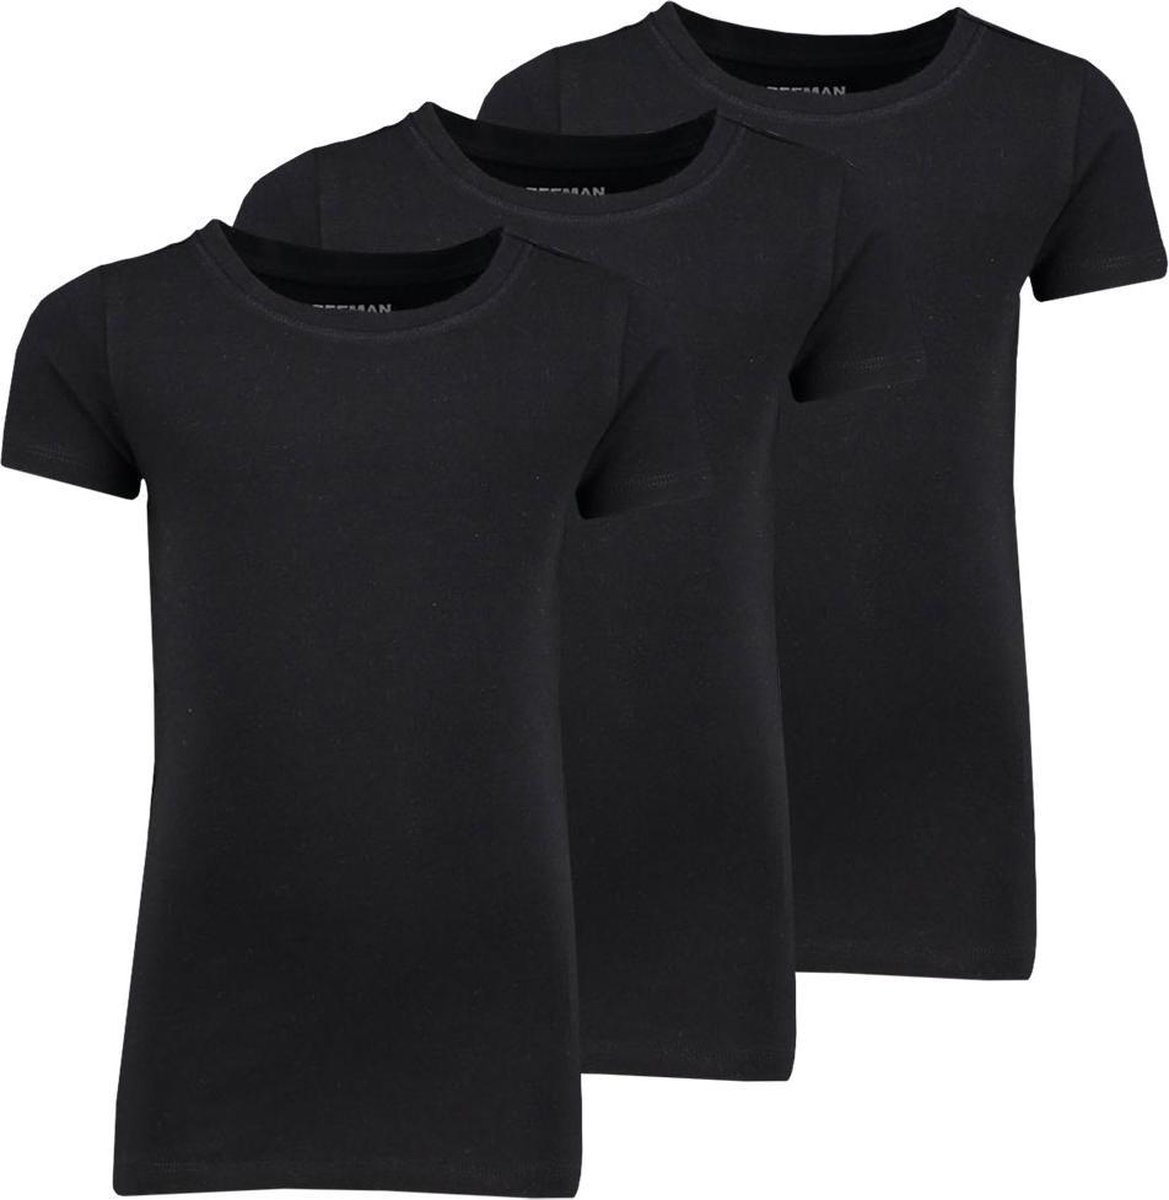 Zeeman kinder meisjes T-shirt korte mouw - zwart - maat 92 - 3 stuks